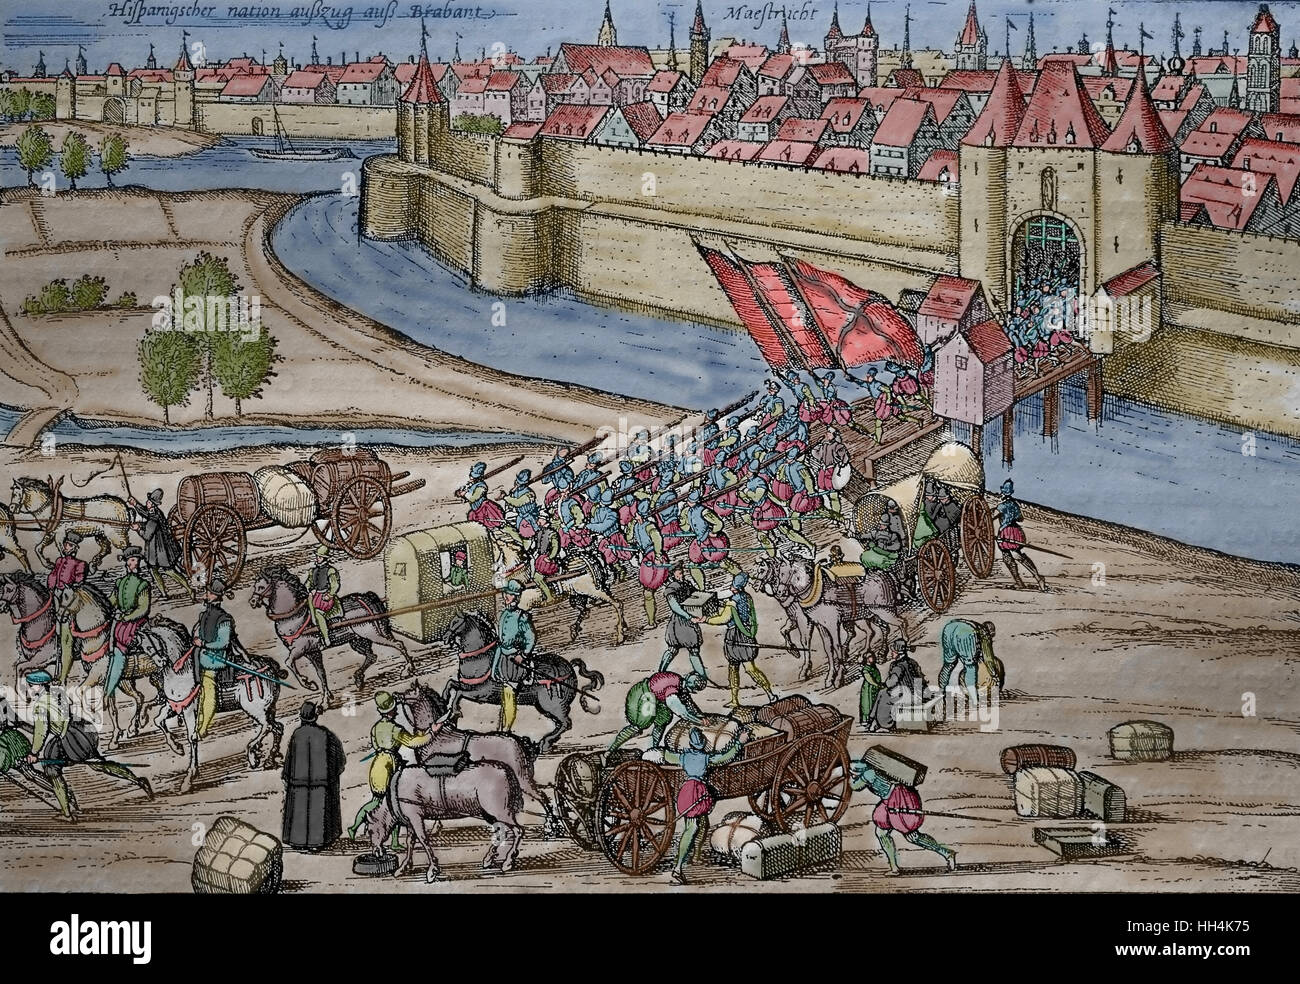 Les Espagnols quittent la ville de Maastricht, Pays-Bas espagnols, 16ème siècle. Banque D'Images